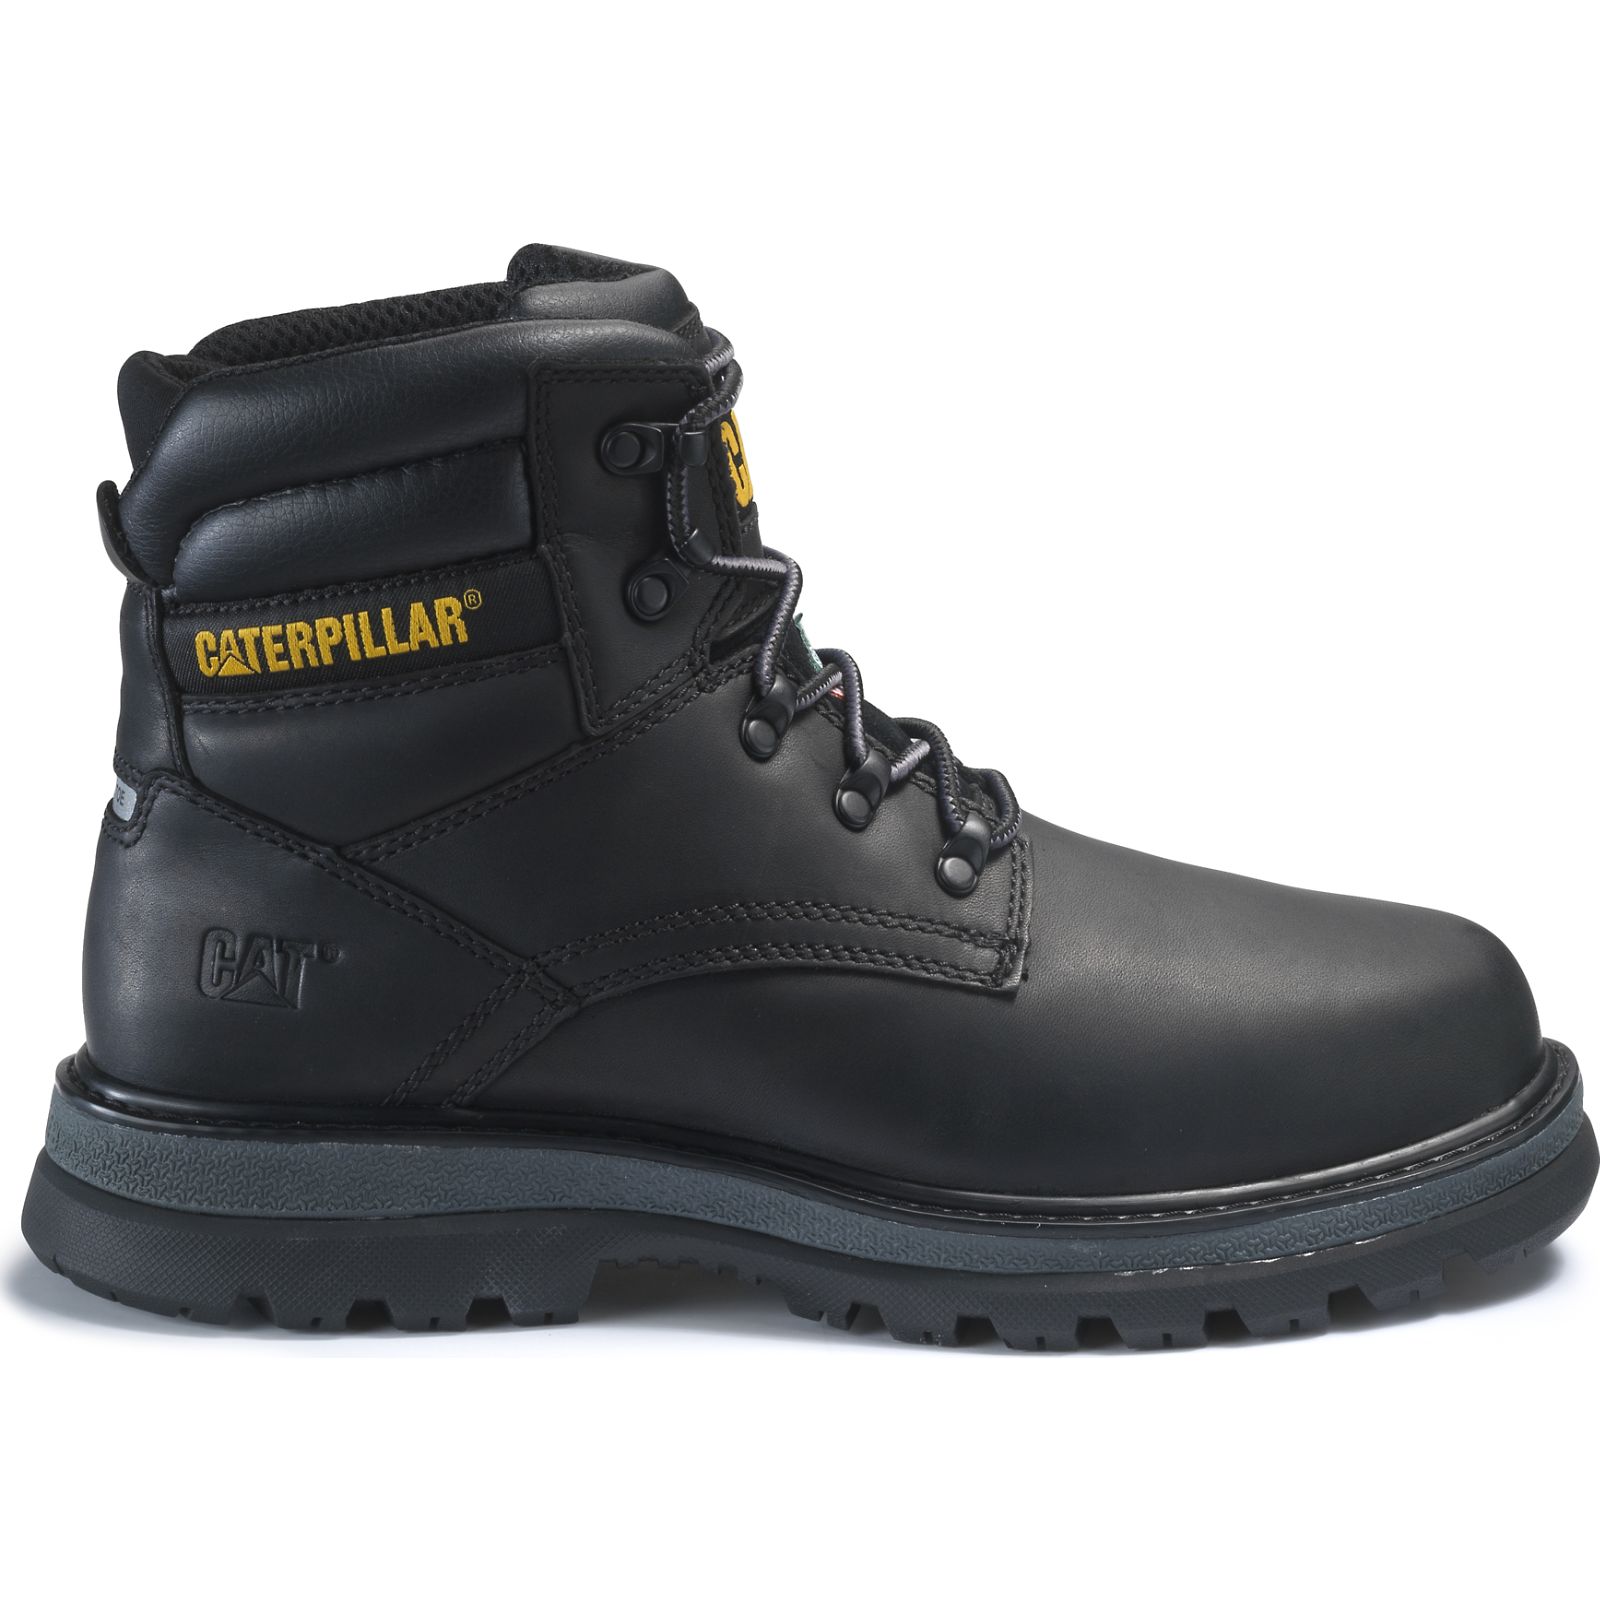 Caterpillar Fairbanks St Tx Csa - Mens Work Boots - Black - NZ (694KFVGOR)